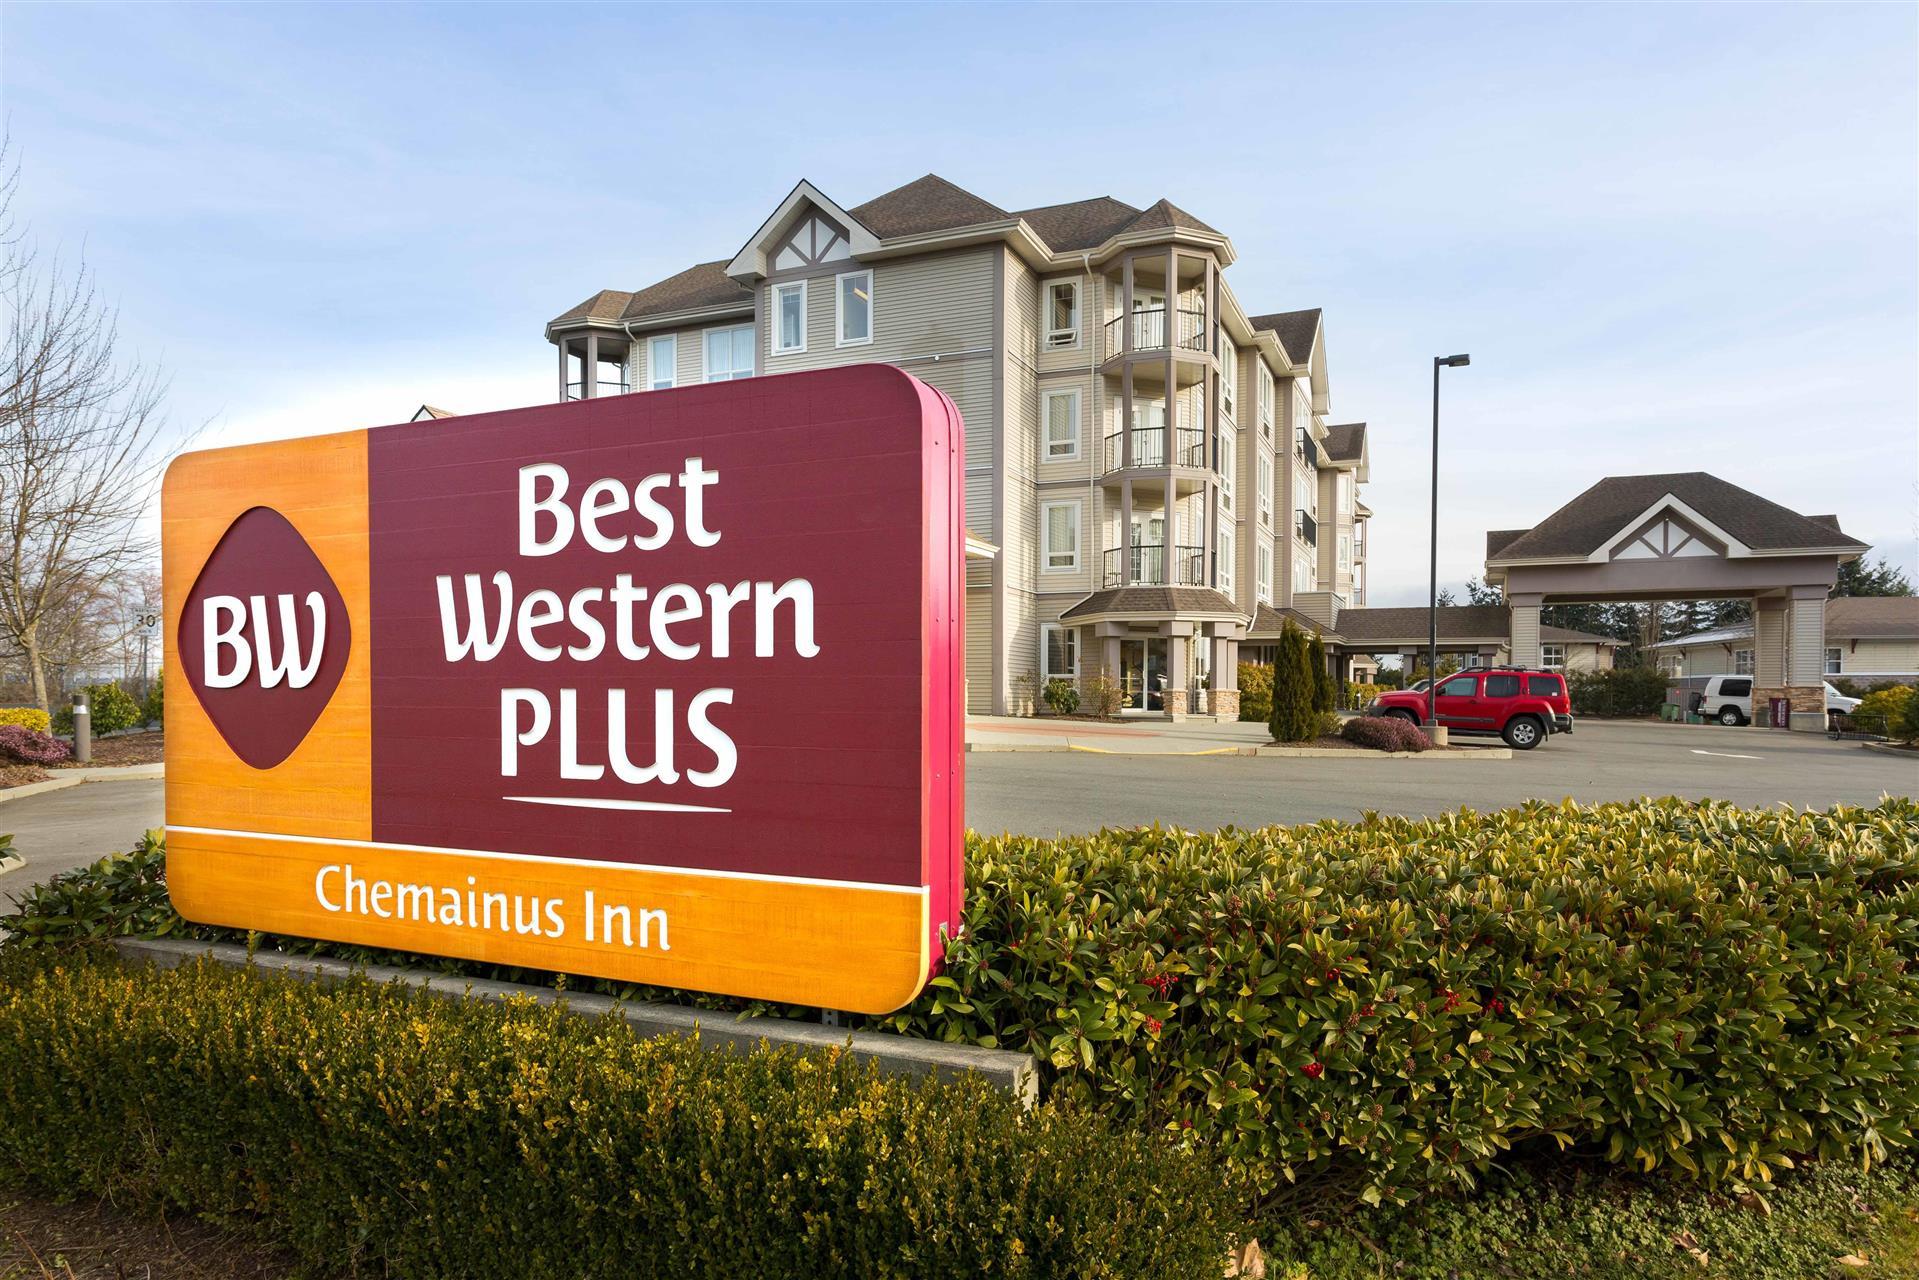 Best Western Plus Chemainus Inn in Chemainus, BC